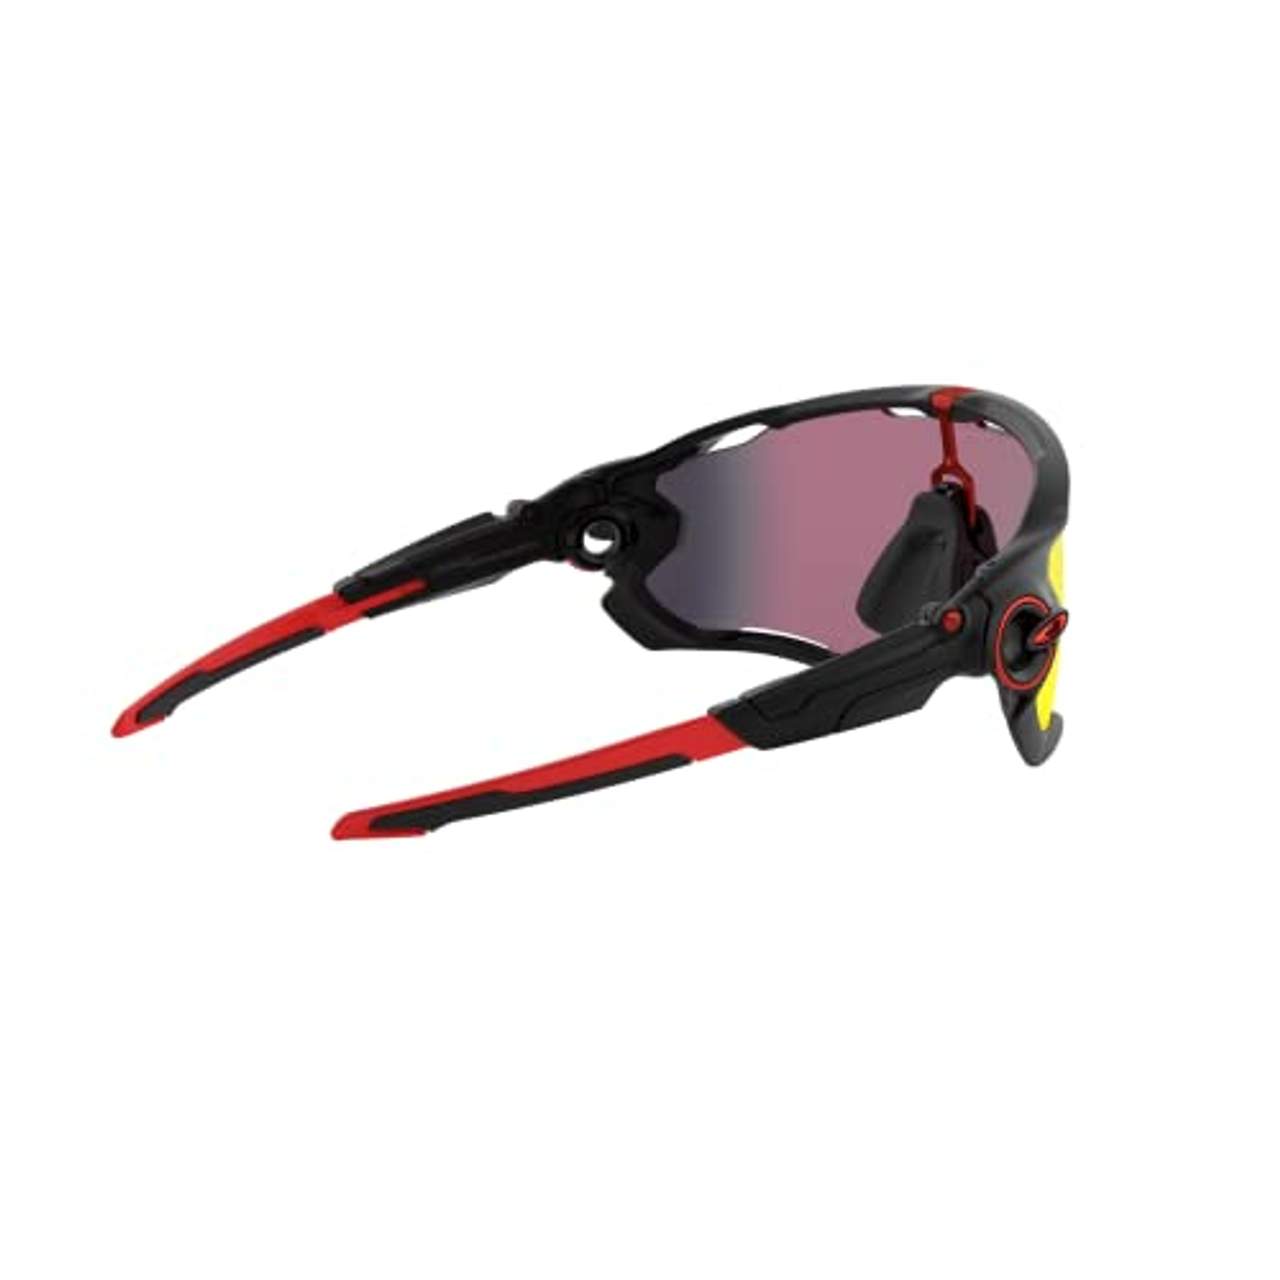 Oakley Unisex-Adult OO9290-2031 Sunglasses